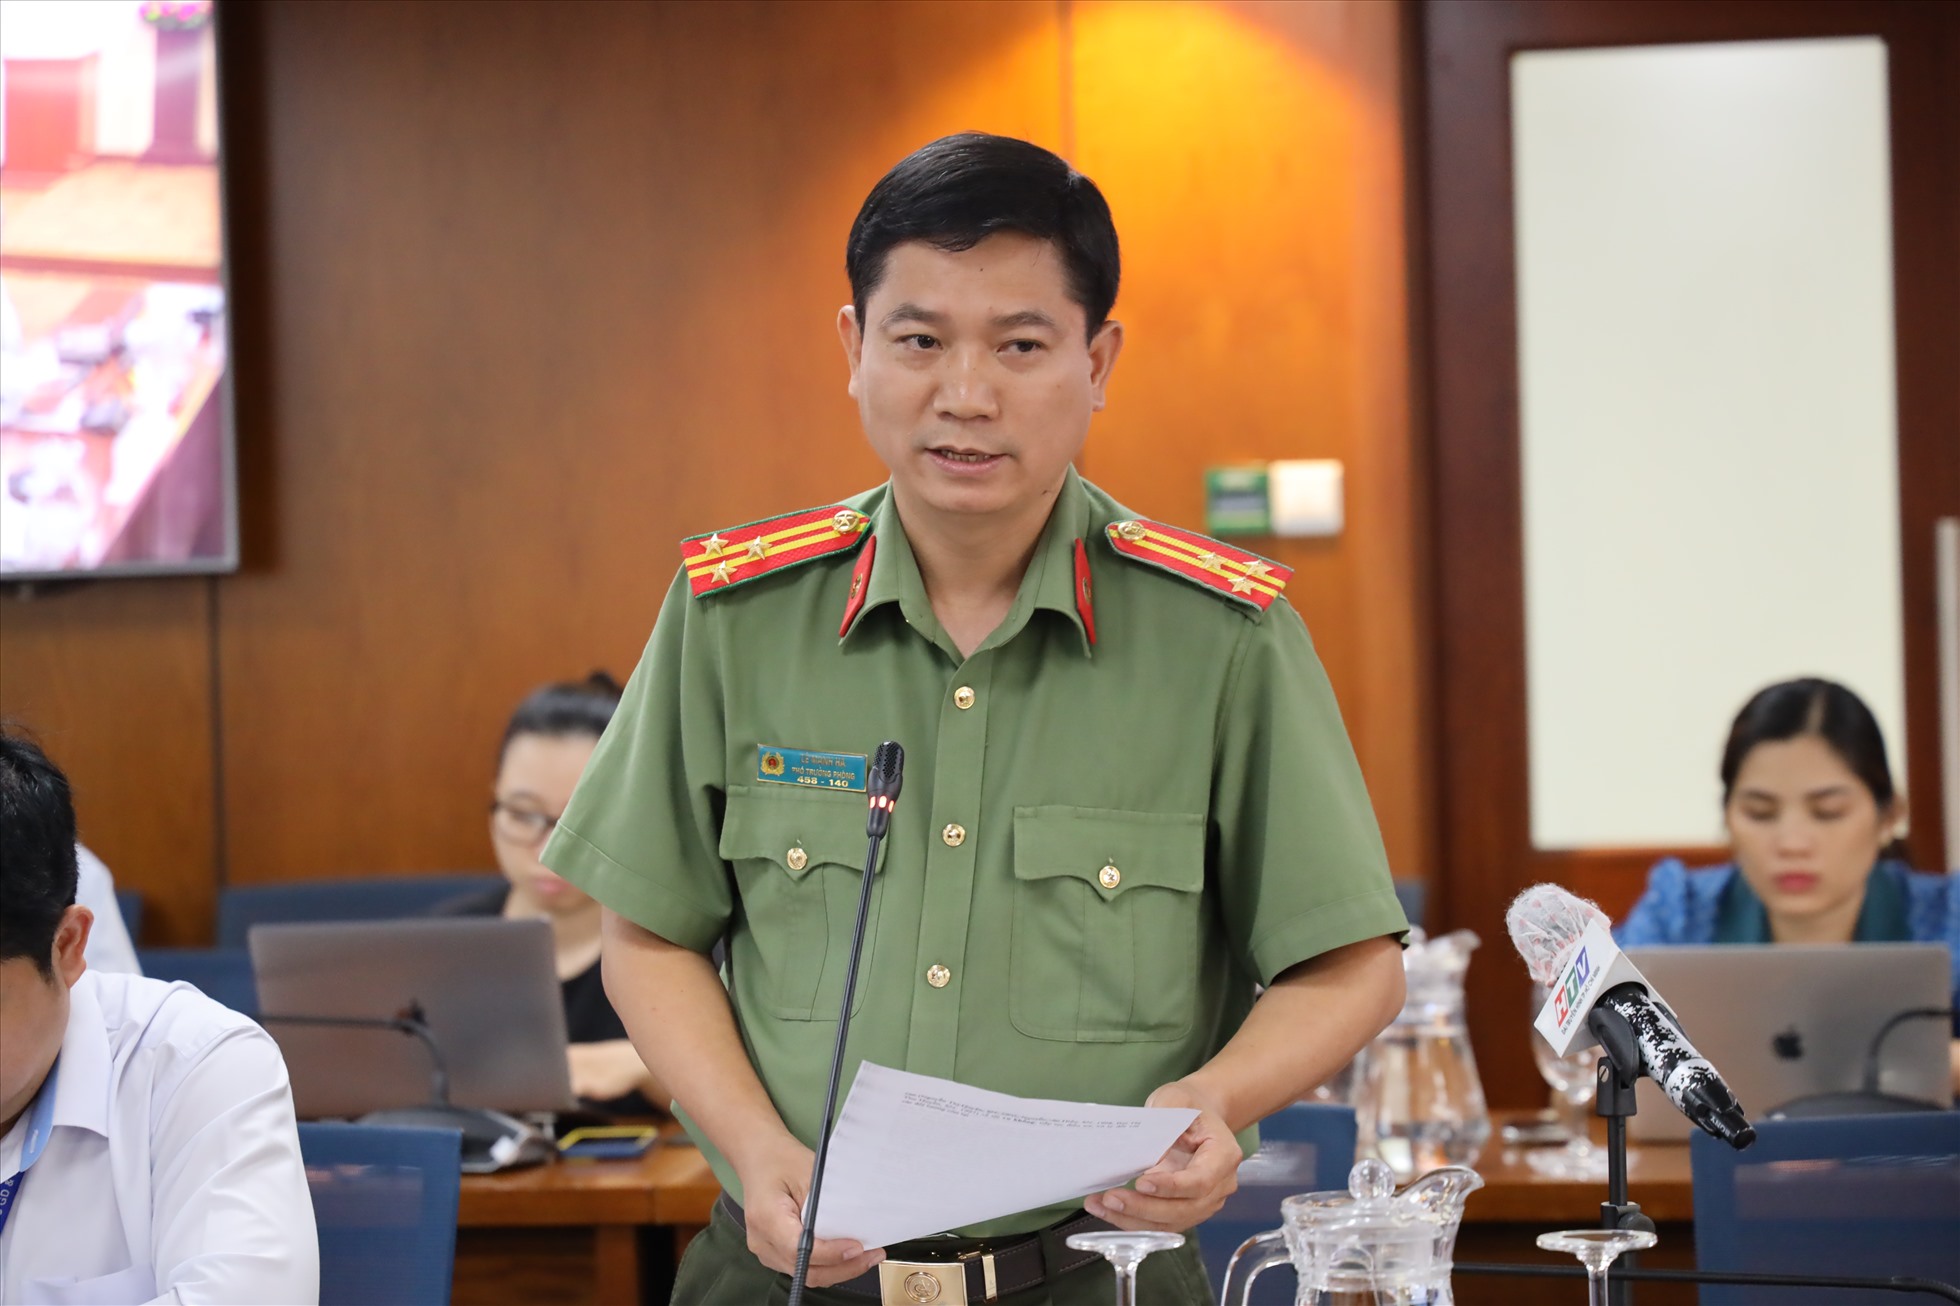 Phó Trưởng phòng tham mưu Công an TP, Thượng tá Lê Mạnh Hà trả lời các nội dung được phóng viên quan tâm. Ảnh: HUYỀN MAI